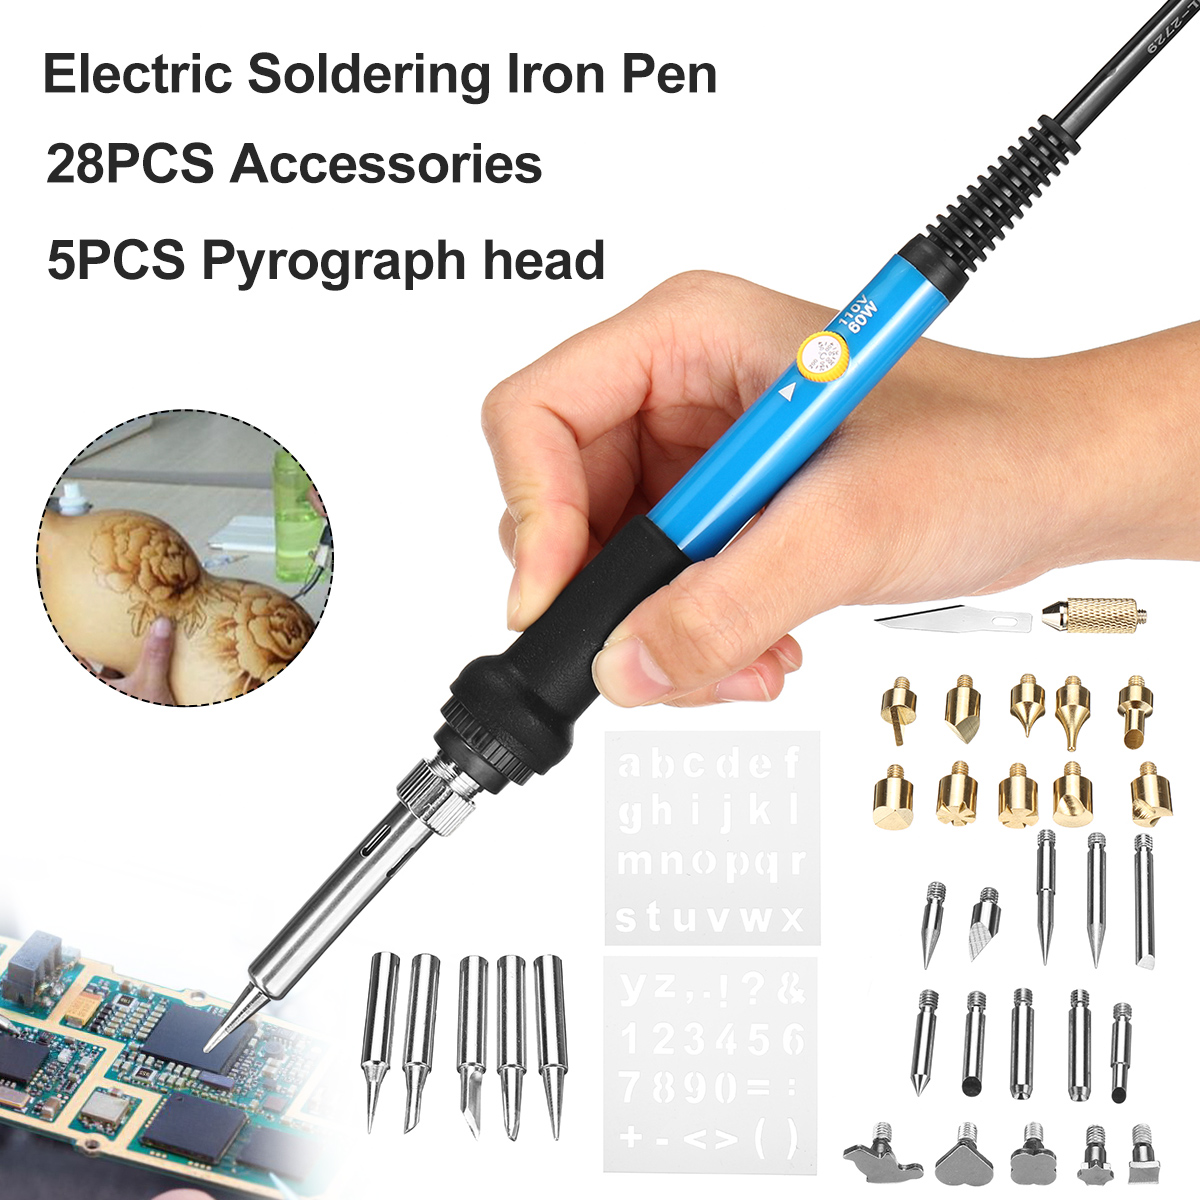 Digital-Soldering-Iron-Pen-Welding-Solder-Wire-Tips-Temperature-Adjustable-Set-1646120-2